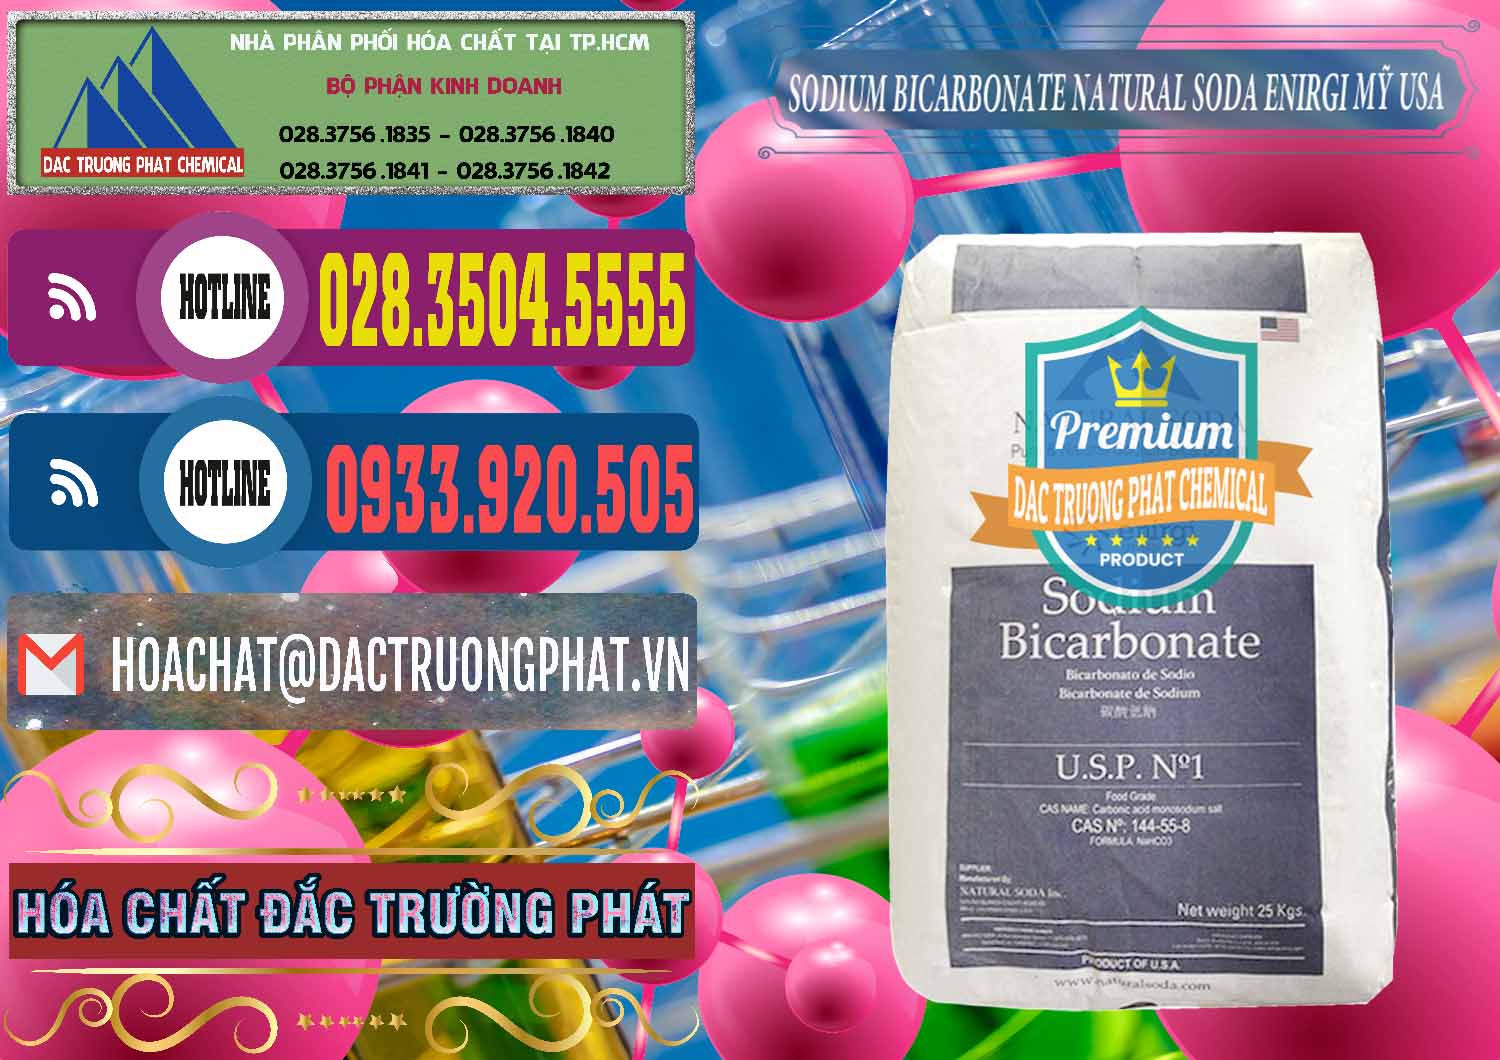 Nơi chuyên bán ( phân phối ) Sodium Bicarbonate – Bicar NaHCO3 Food Grade Natural Soda Enirgi Mỹ USA - 0257 - Cty chuyên cung cấp ( nhập khẩu ) hóa chất tại TP.HCM - muabanhoachat.com.vn